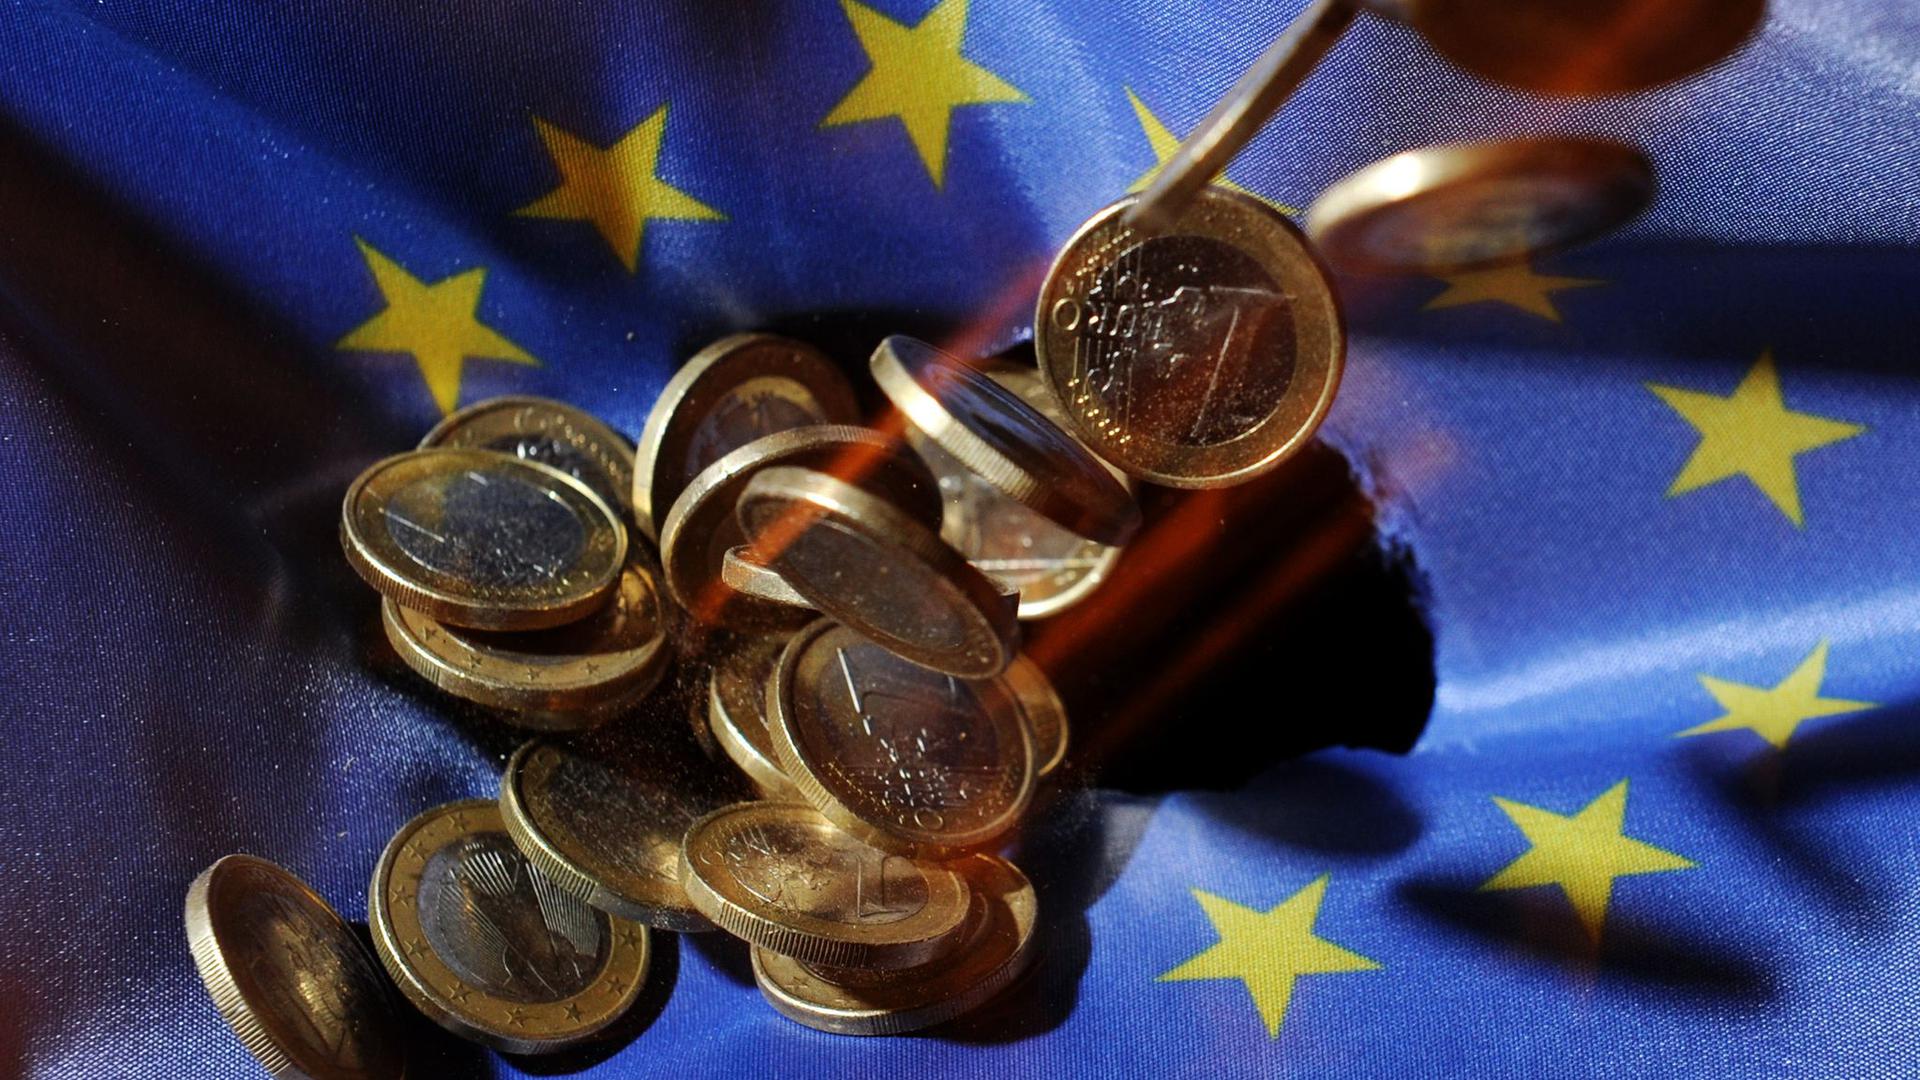 Der EU-Rechnungshof prüft jährlich, ob die Zahlungen durch die EU-Kommission regelkonform erfolgen.